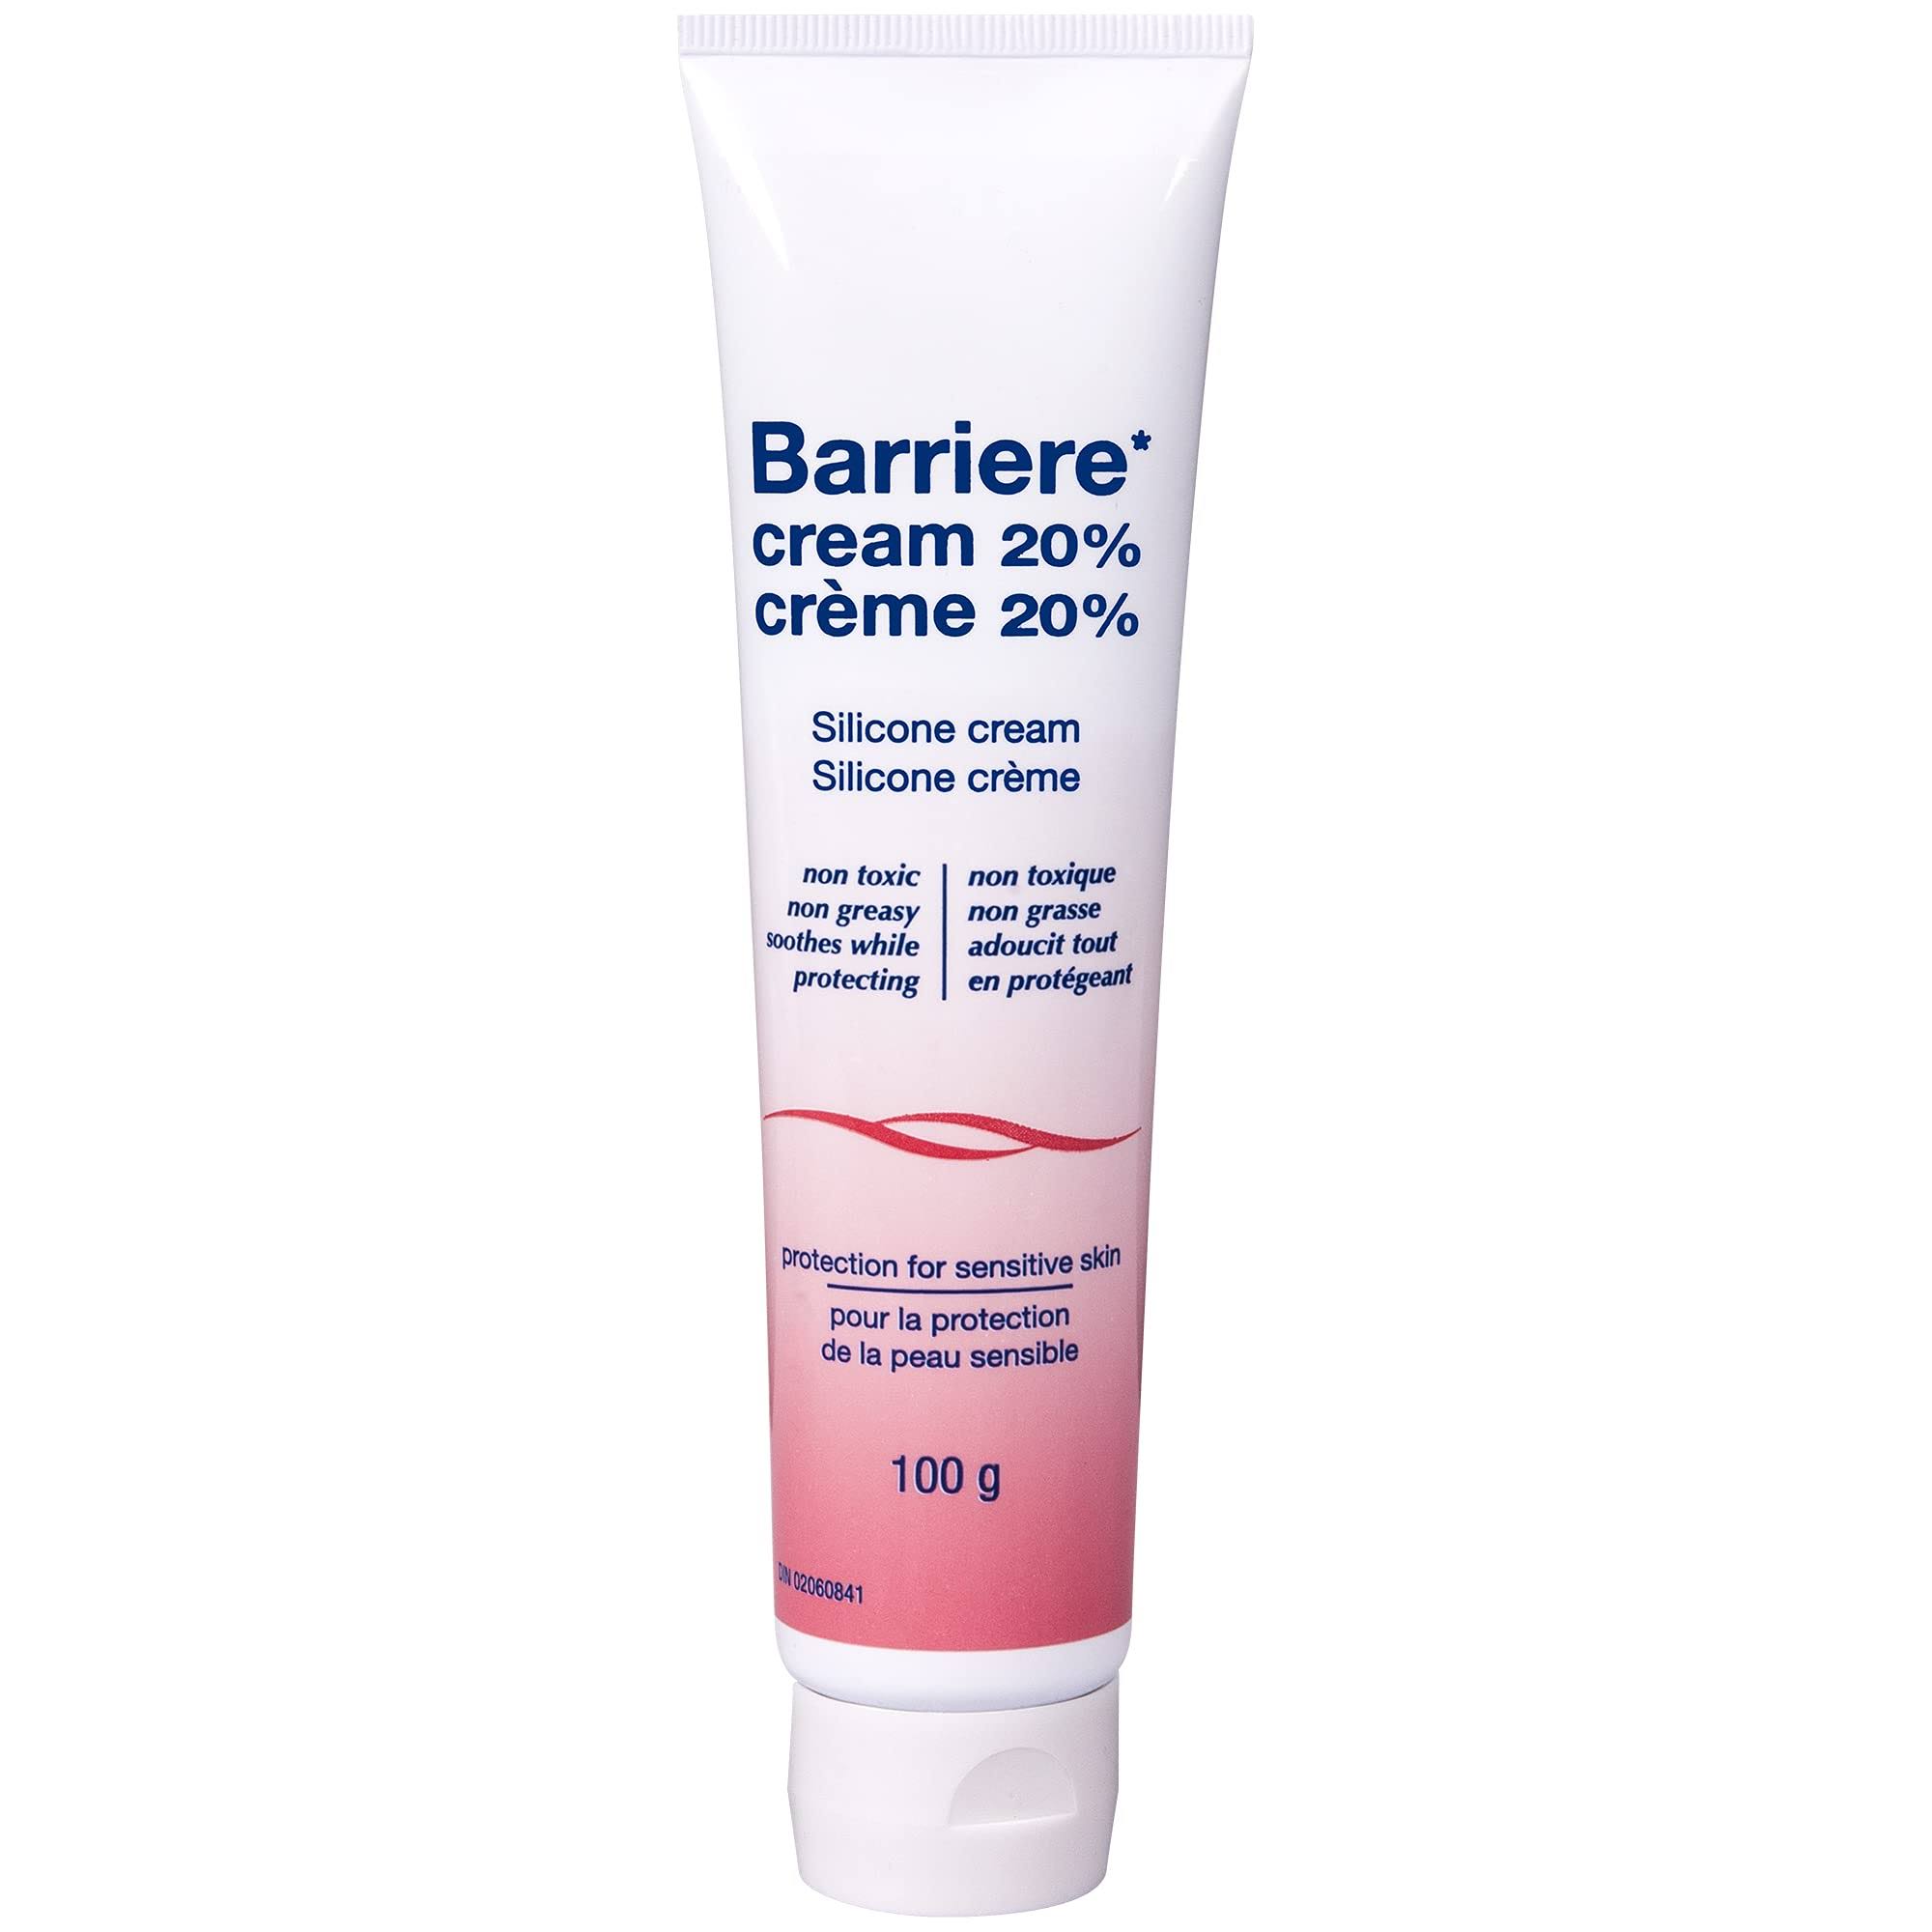 Wellskin Barriere Silicone Skin Cream - 100g